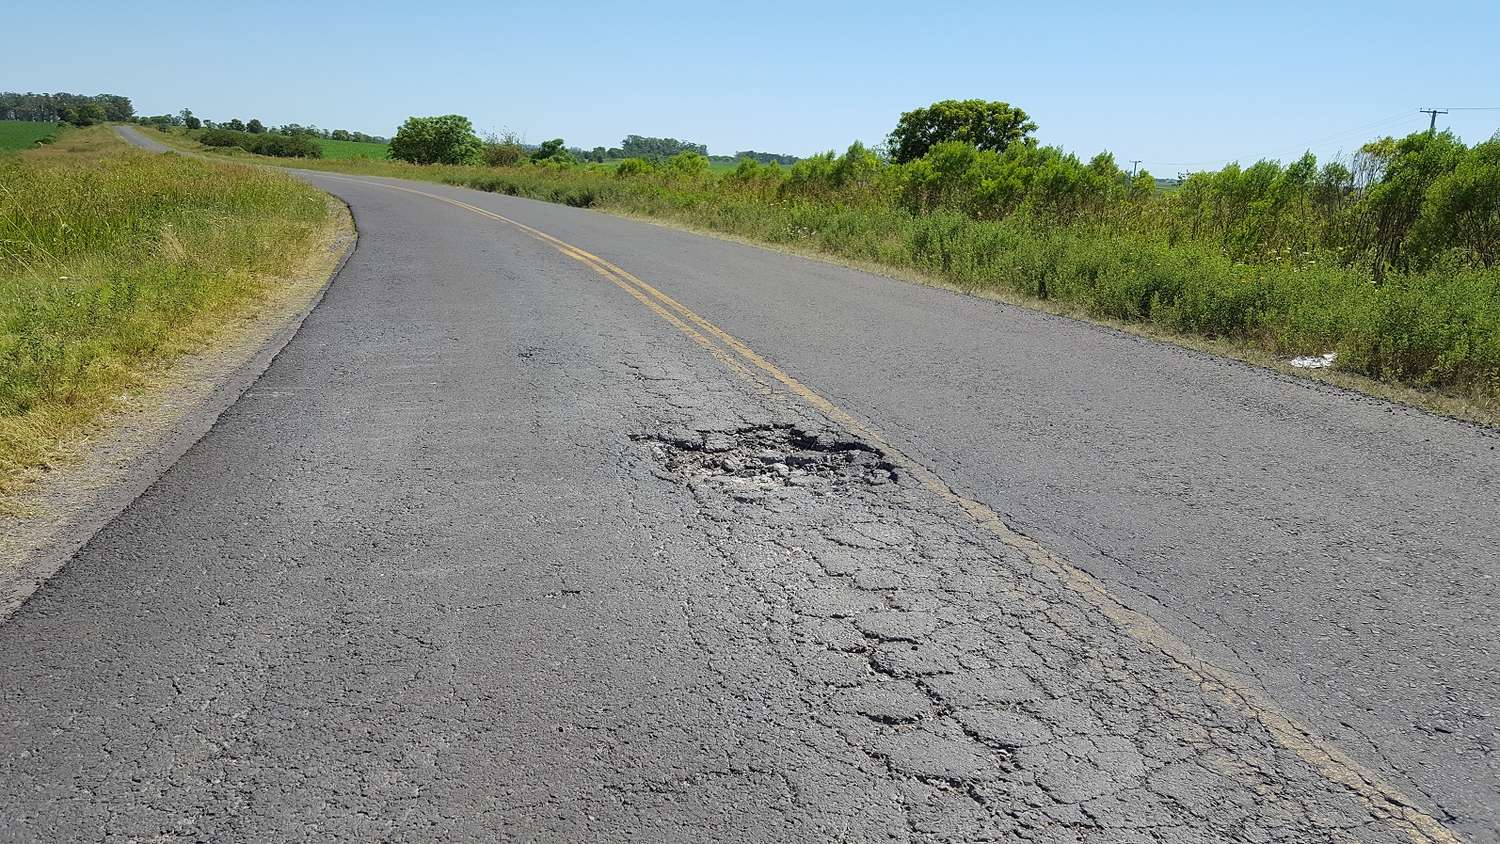 Presenta un importante deterioro el asfalto entre Racedo y Puiggari